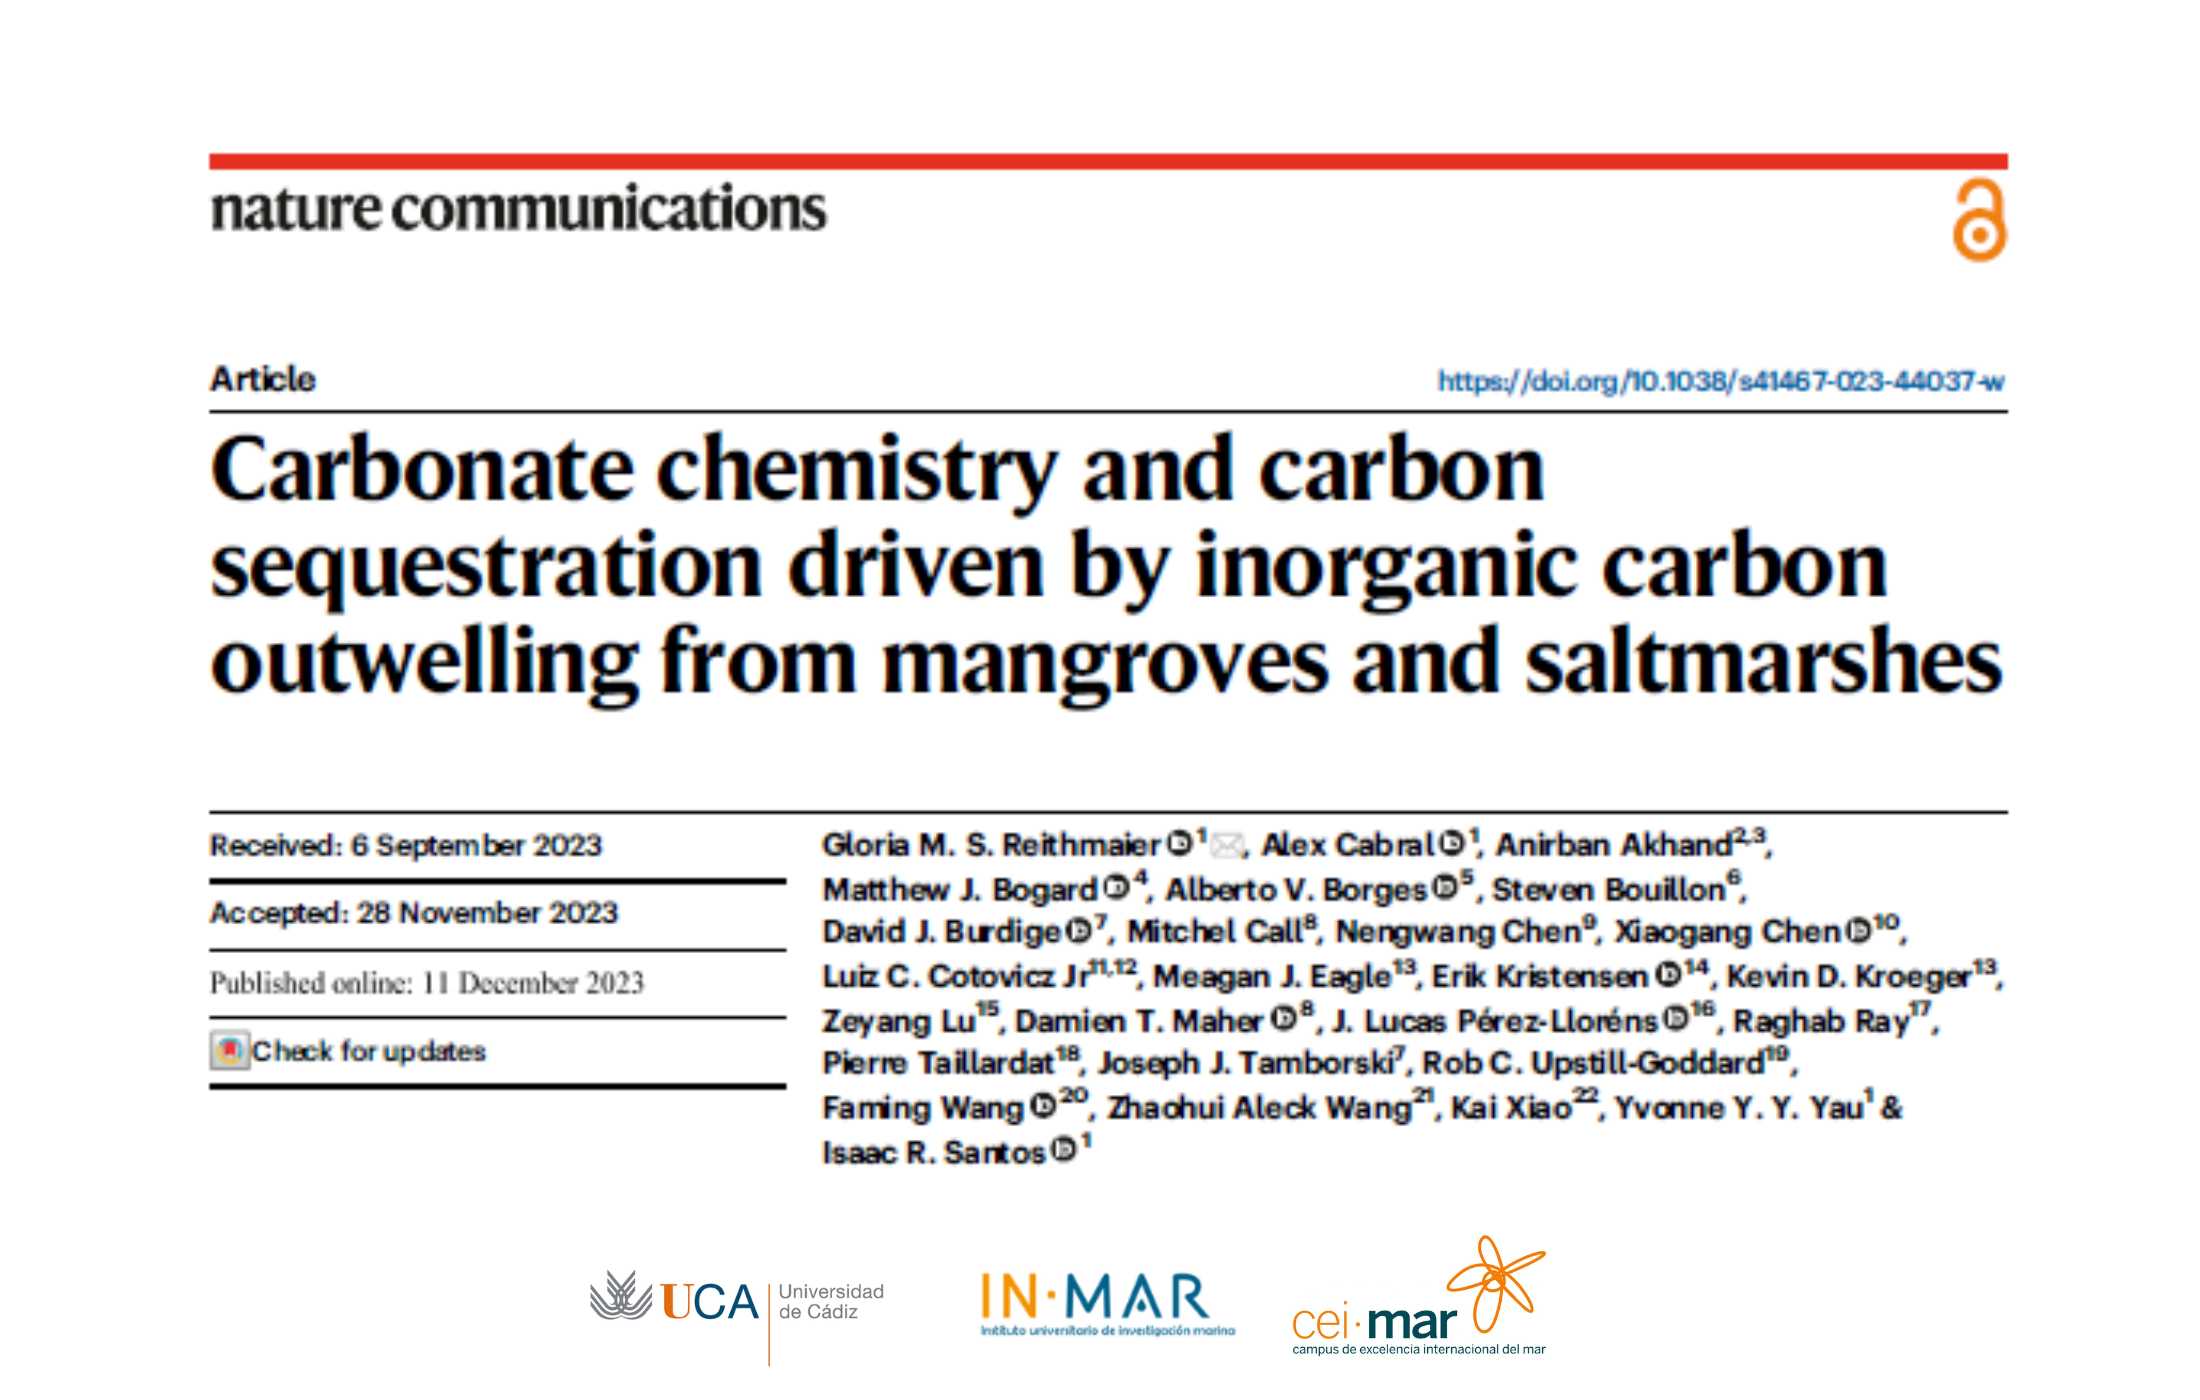 Un investigador de la UCA participa en un estudio que demuestra el papel de los manglares y de las marismas en el secuestro de carbono azul